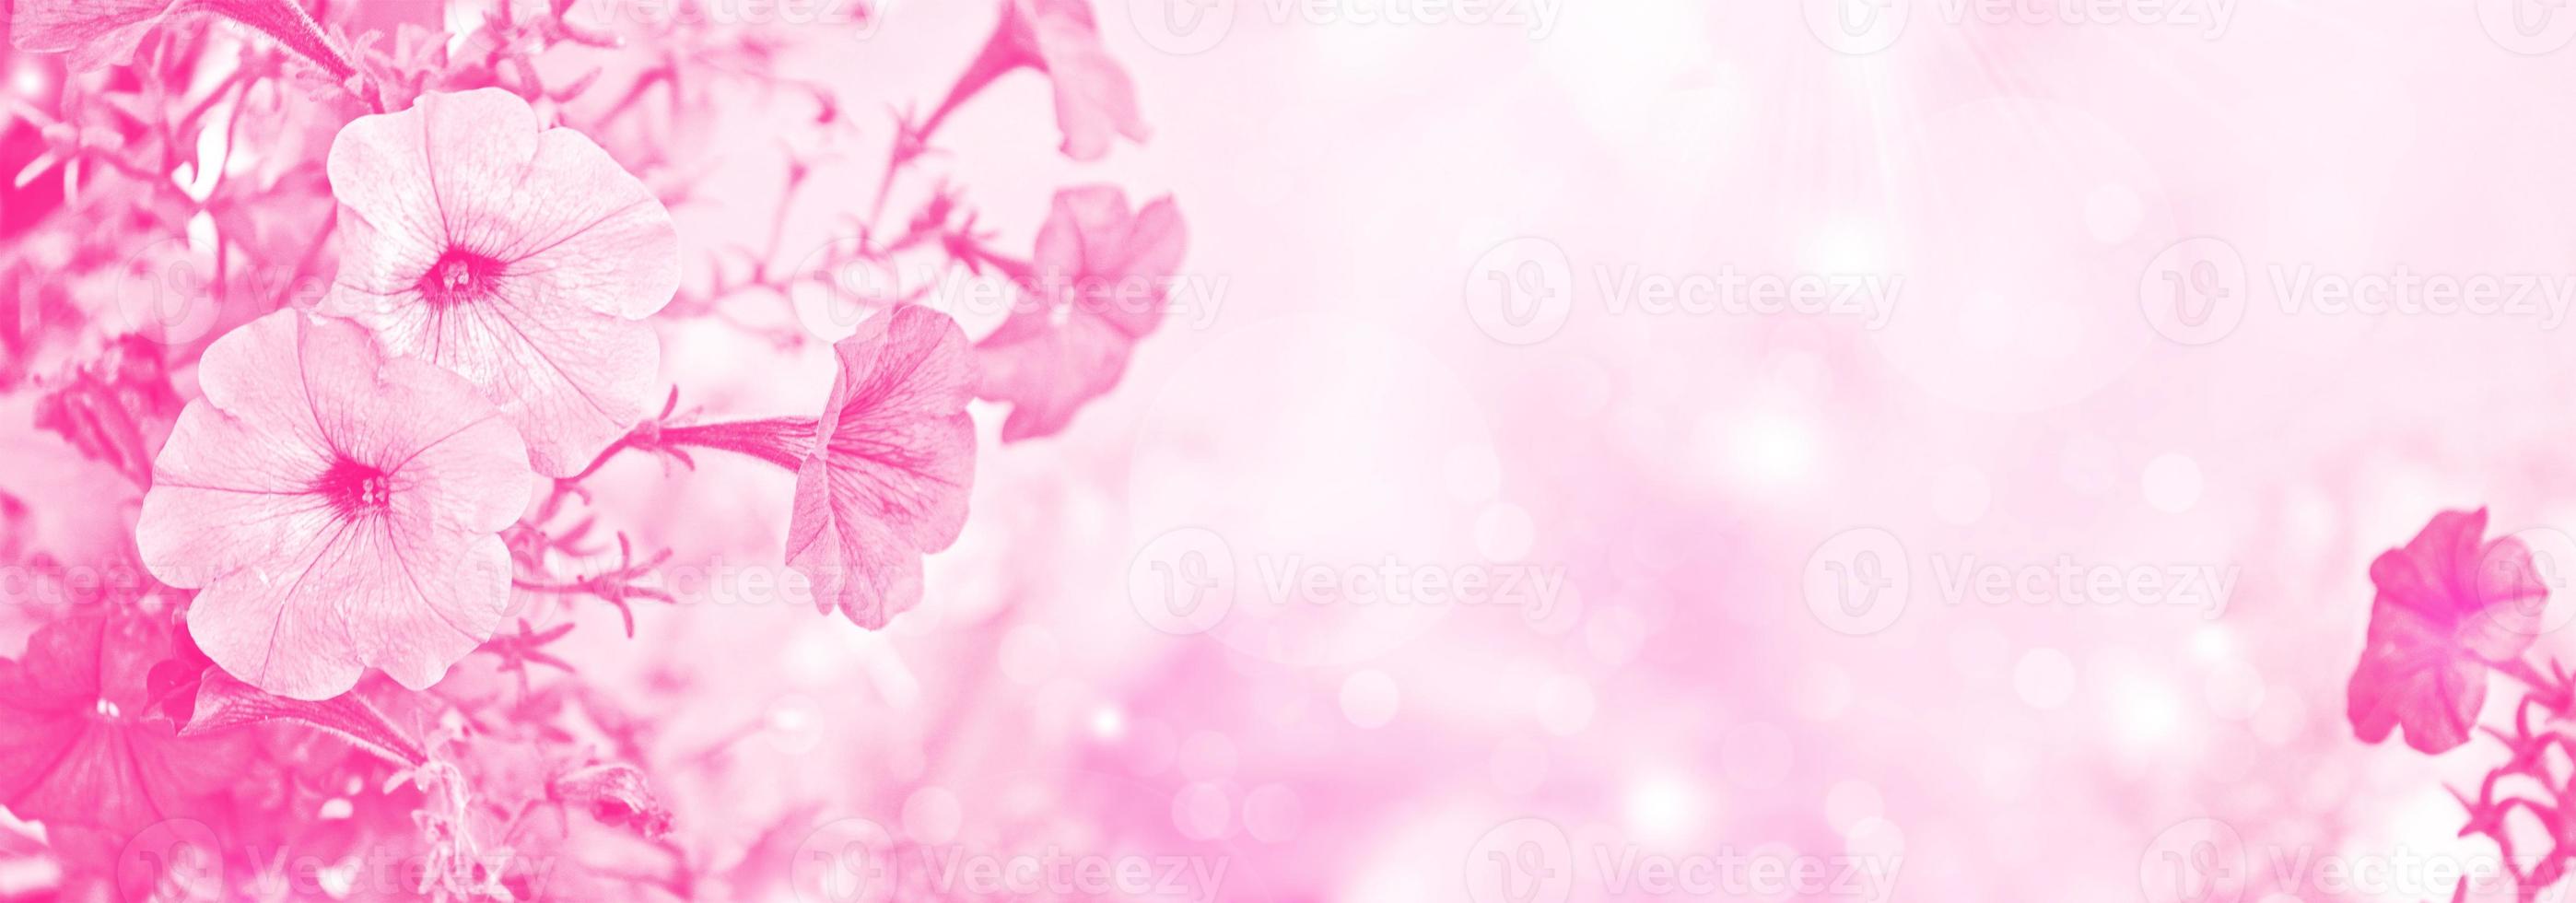 Nahaufnahme einer Petunie auf einem Blumenbeet, rosa Blumen, floraler Hintergrund. foto